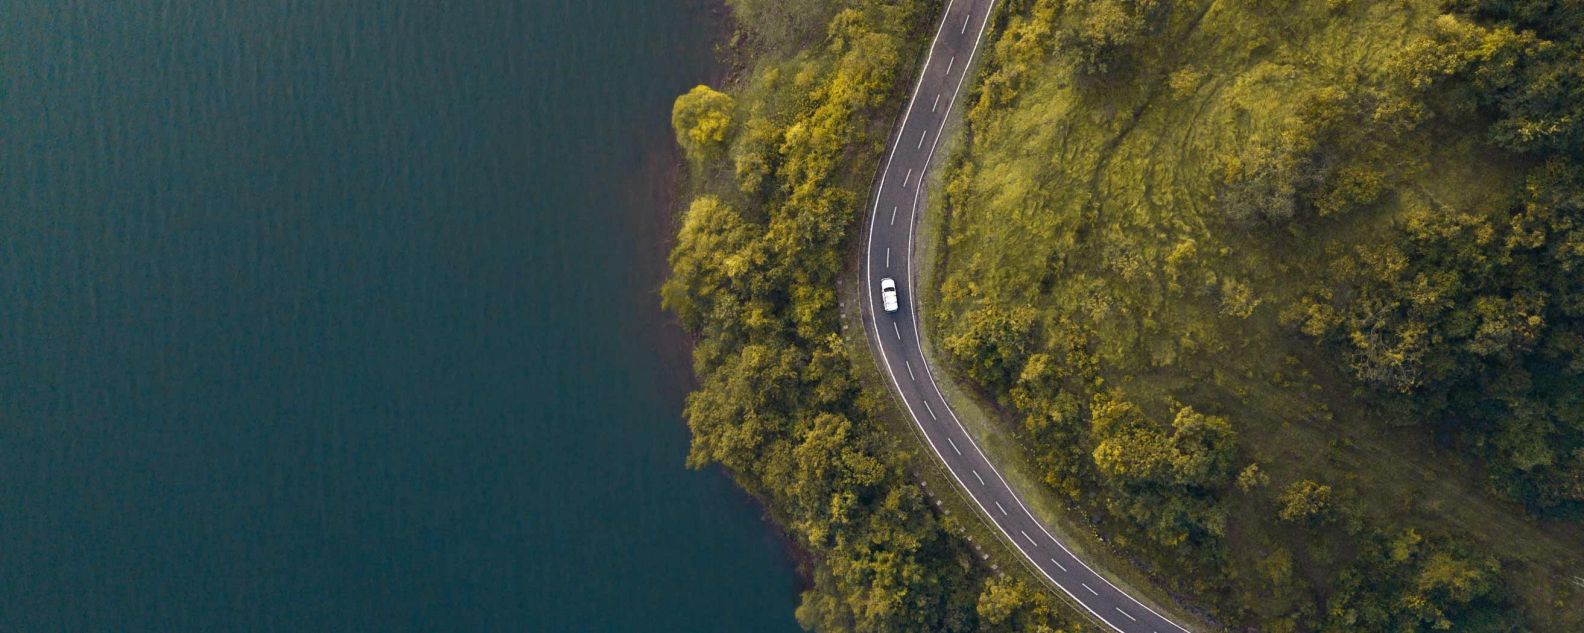 vista aérea de un coche en una carretera sinuosa rodeada de árboles